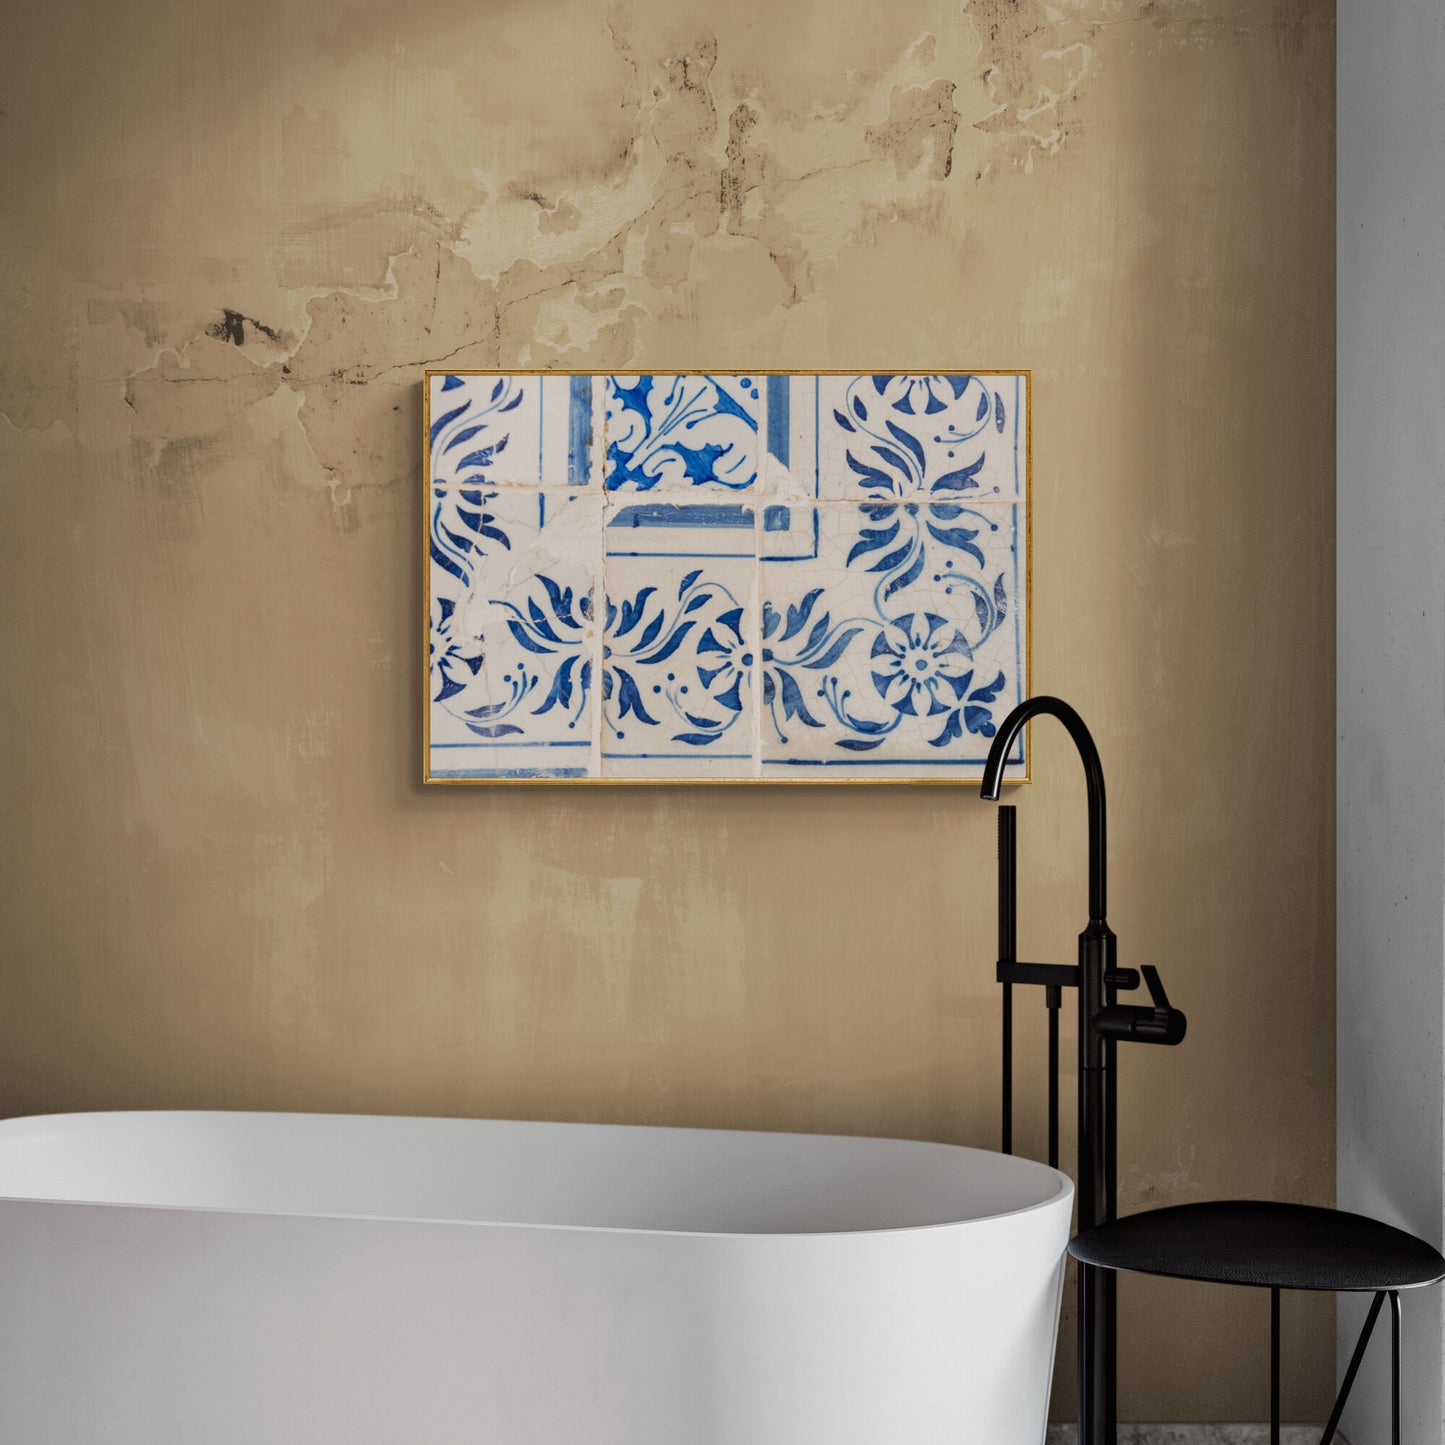 Portuguese tiles azulejos photograph as bathroom wall art